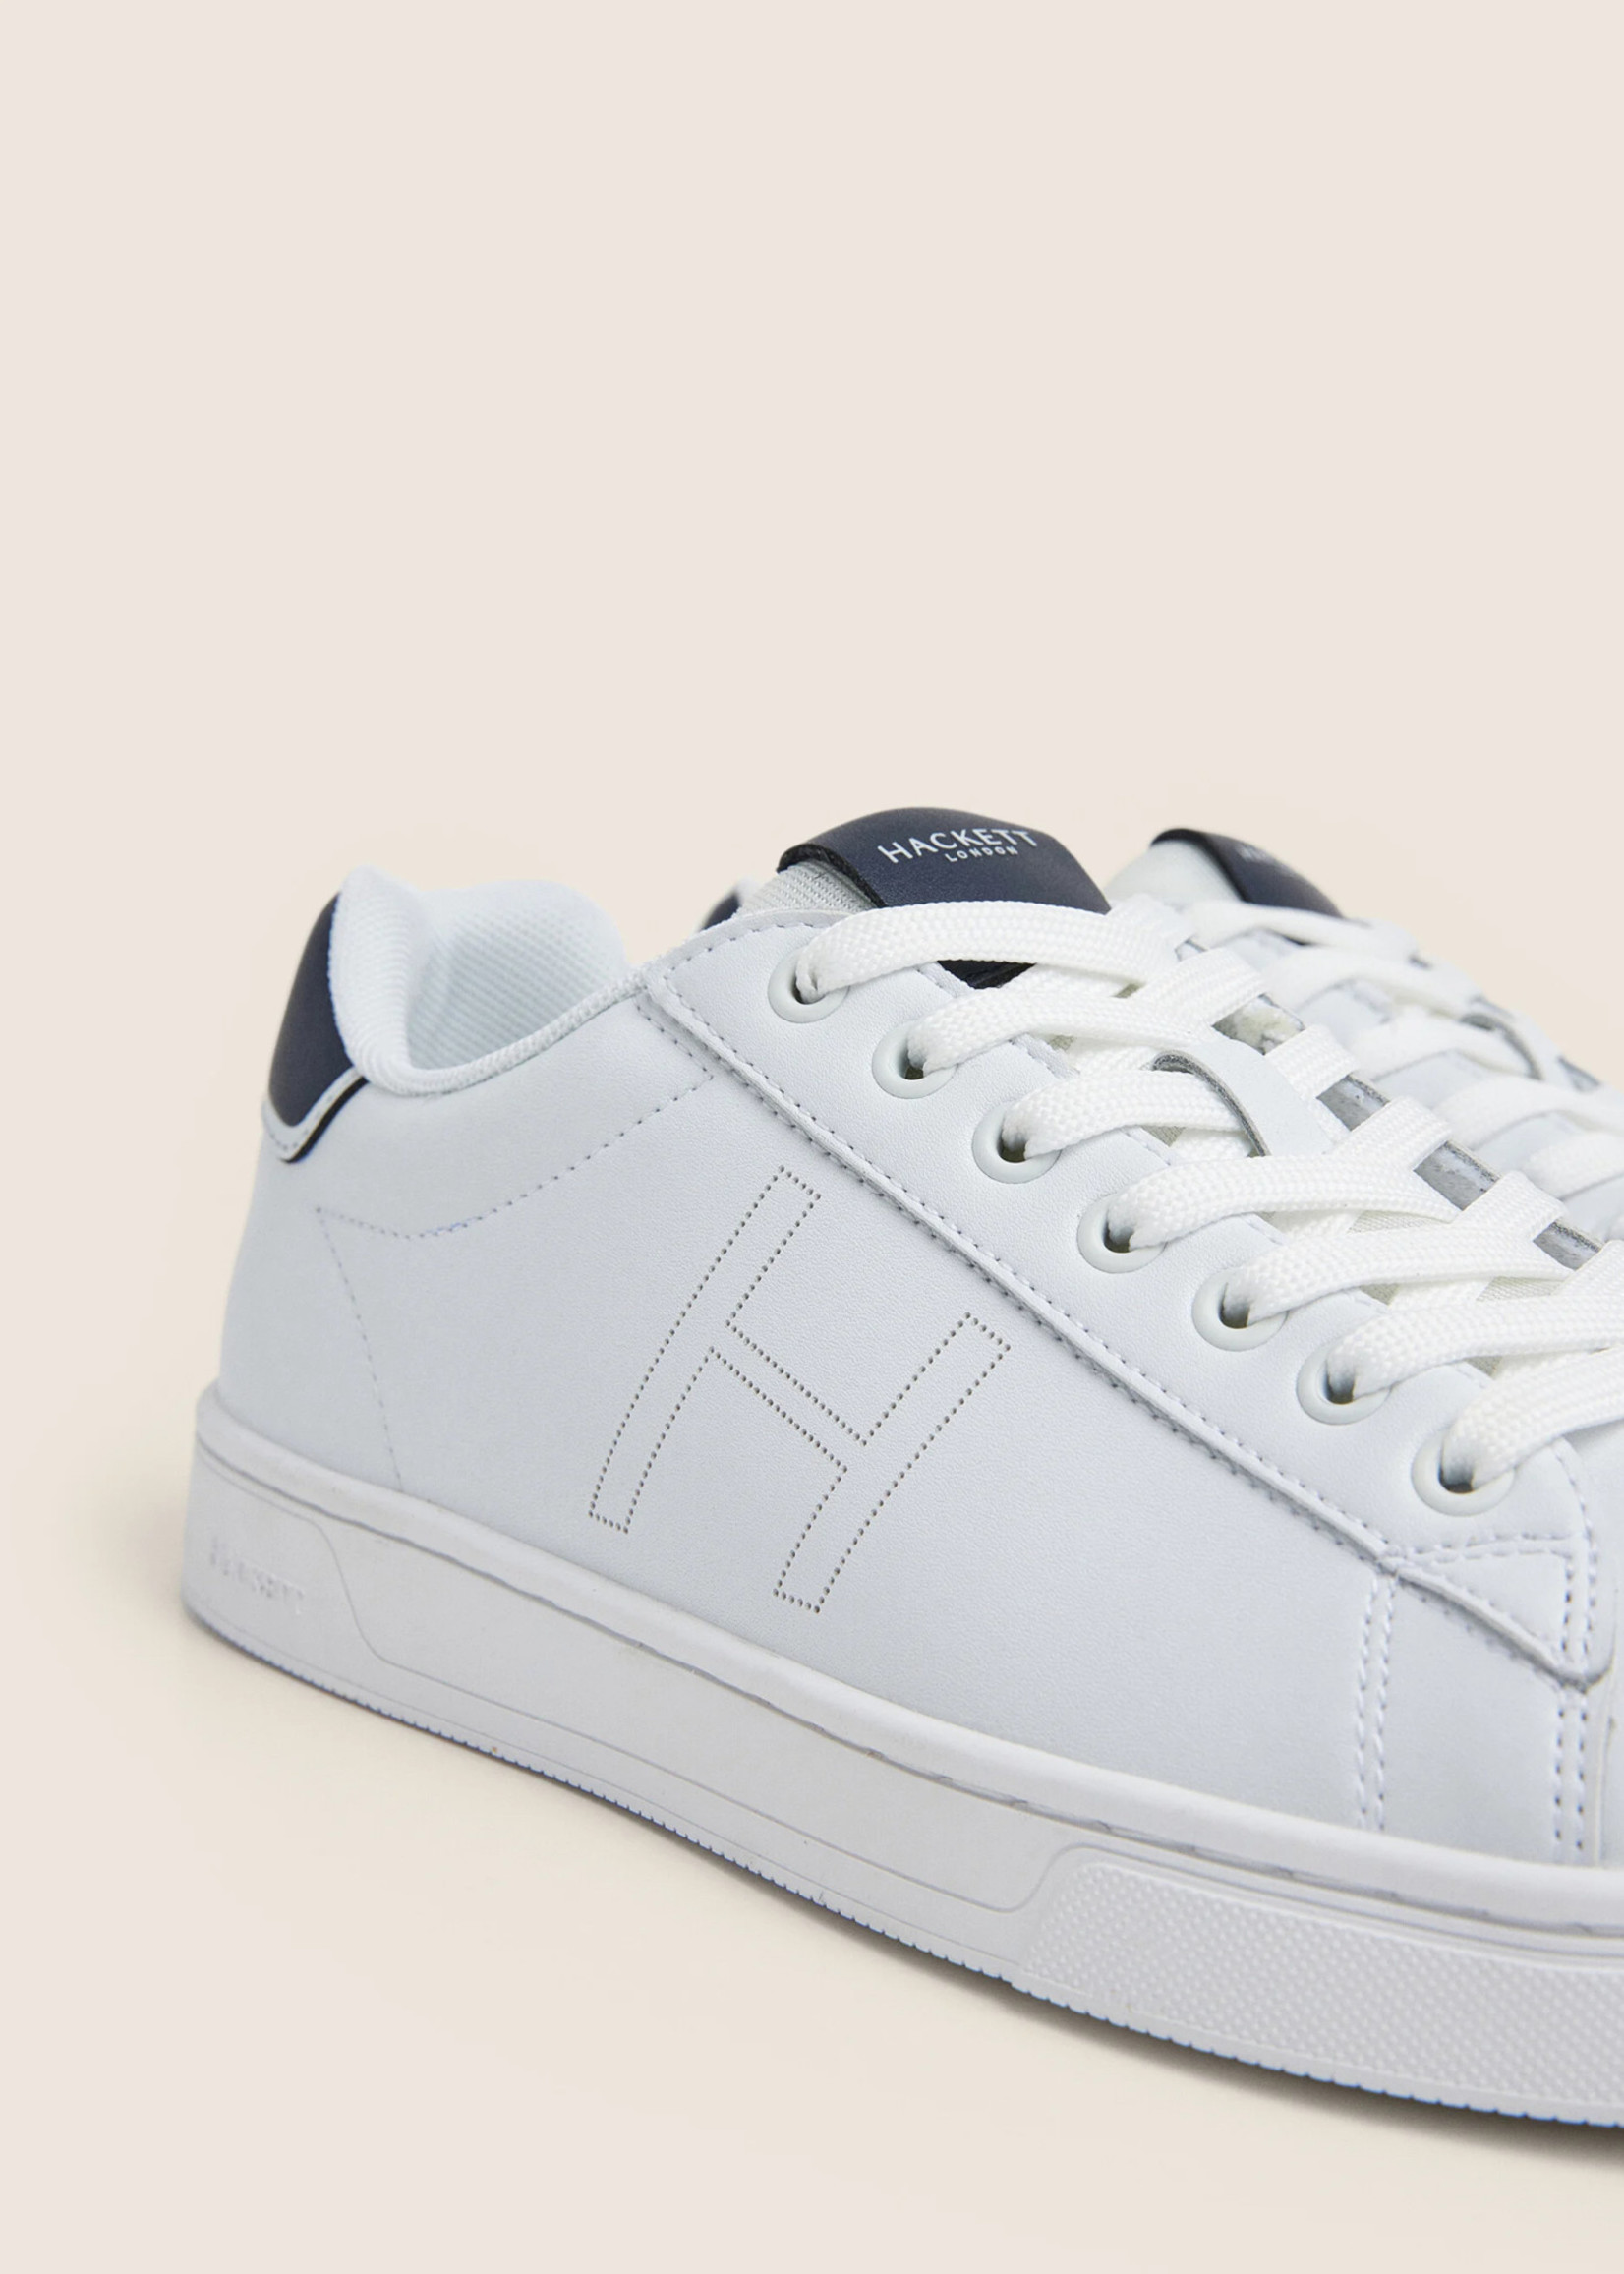 HACKETT Tweekleurige Leren Sneakers - White